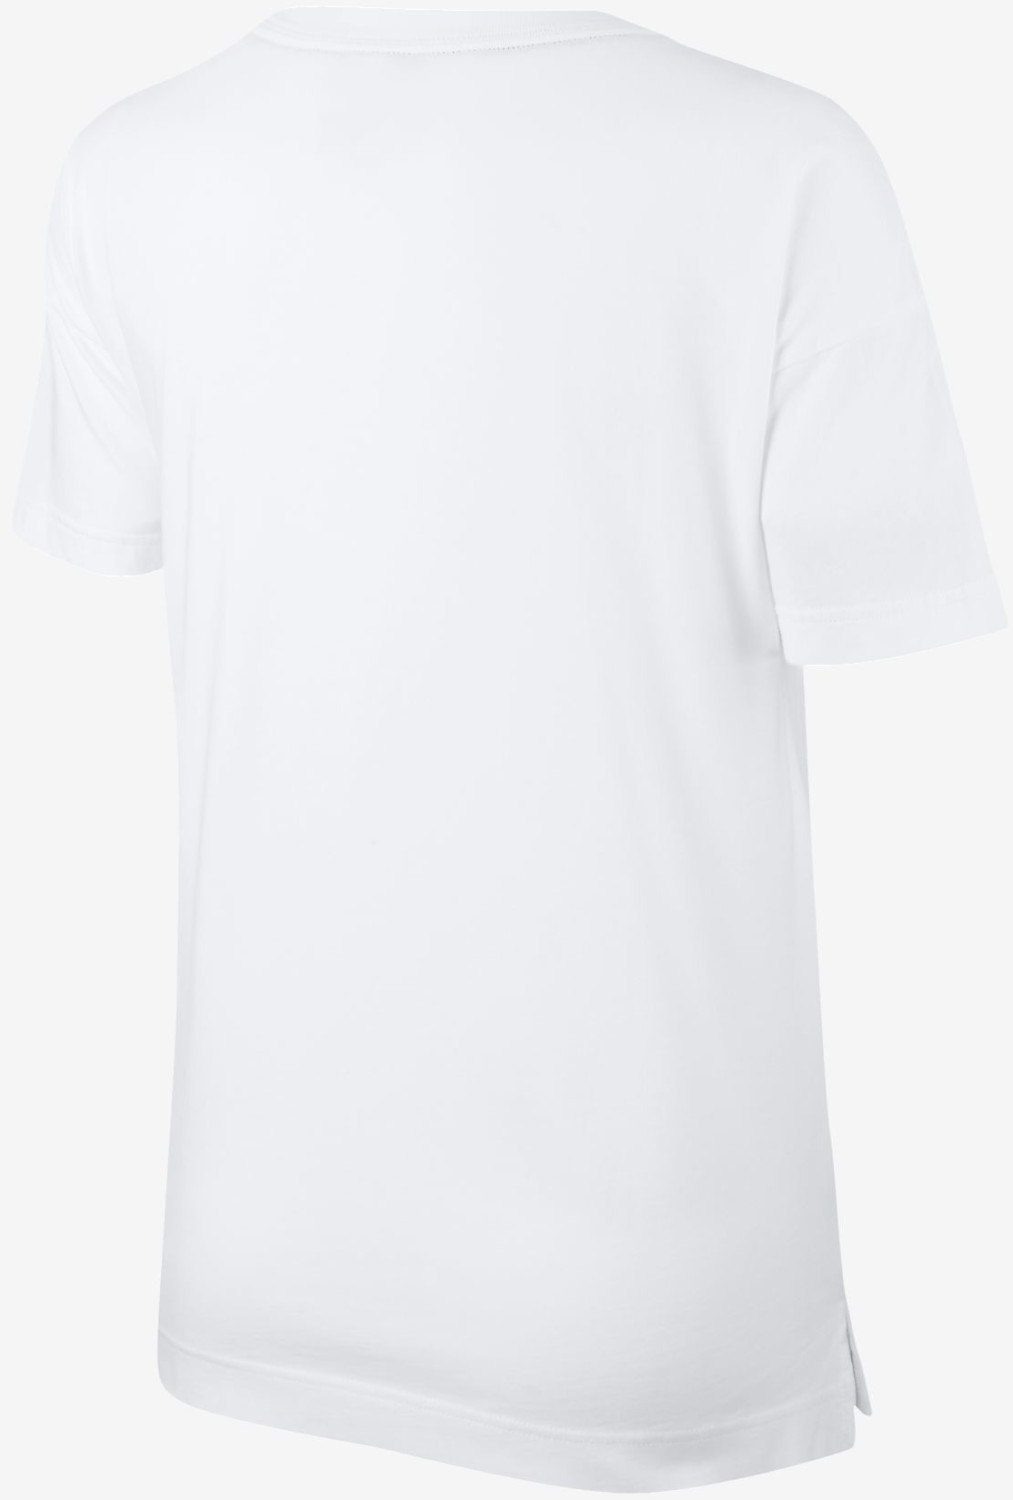 Nike Nike Air Wmns T-Shirt